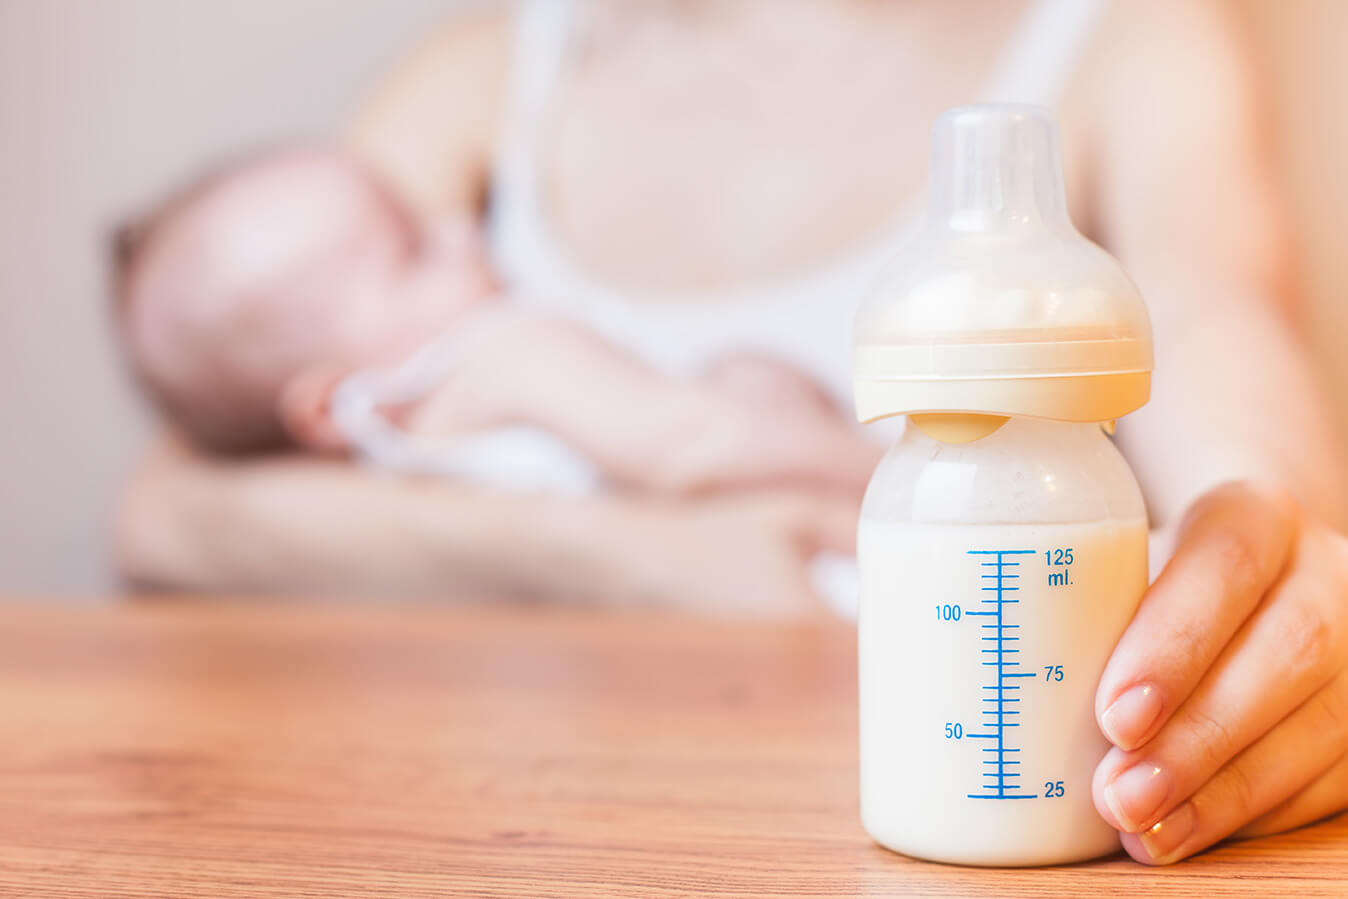 La lactancia materna brinda a los bebés la mejor y única nutrición que  necesitan en sus primeros seis meses de vida, lo que ayuda a…